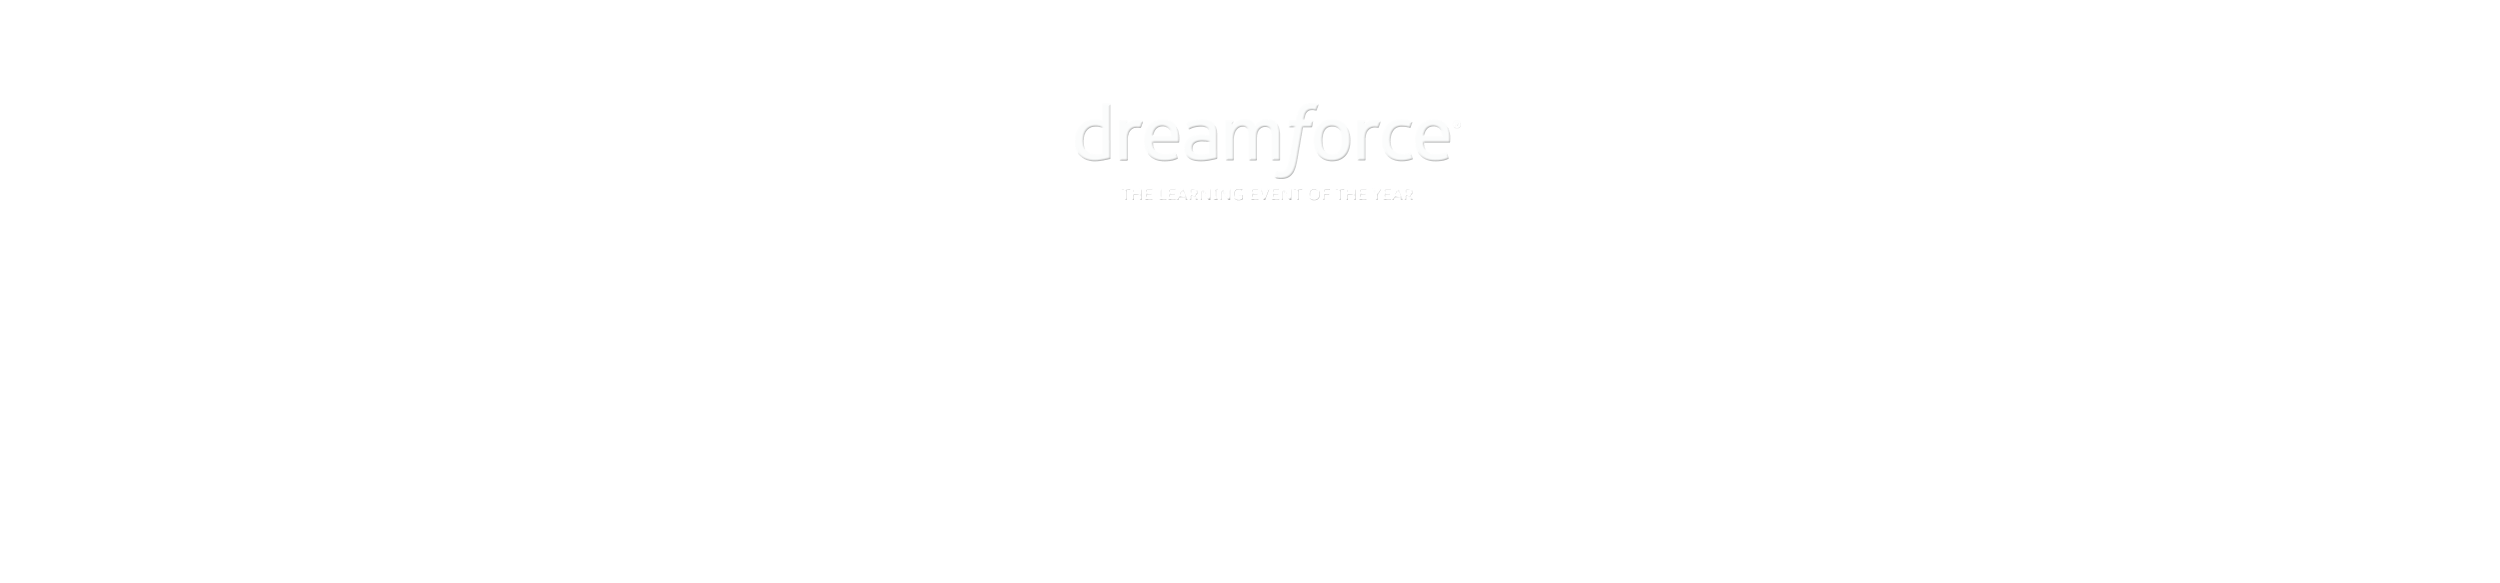 Dreamforce 2017 November 69, 2017 in San Francisco